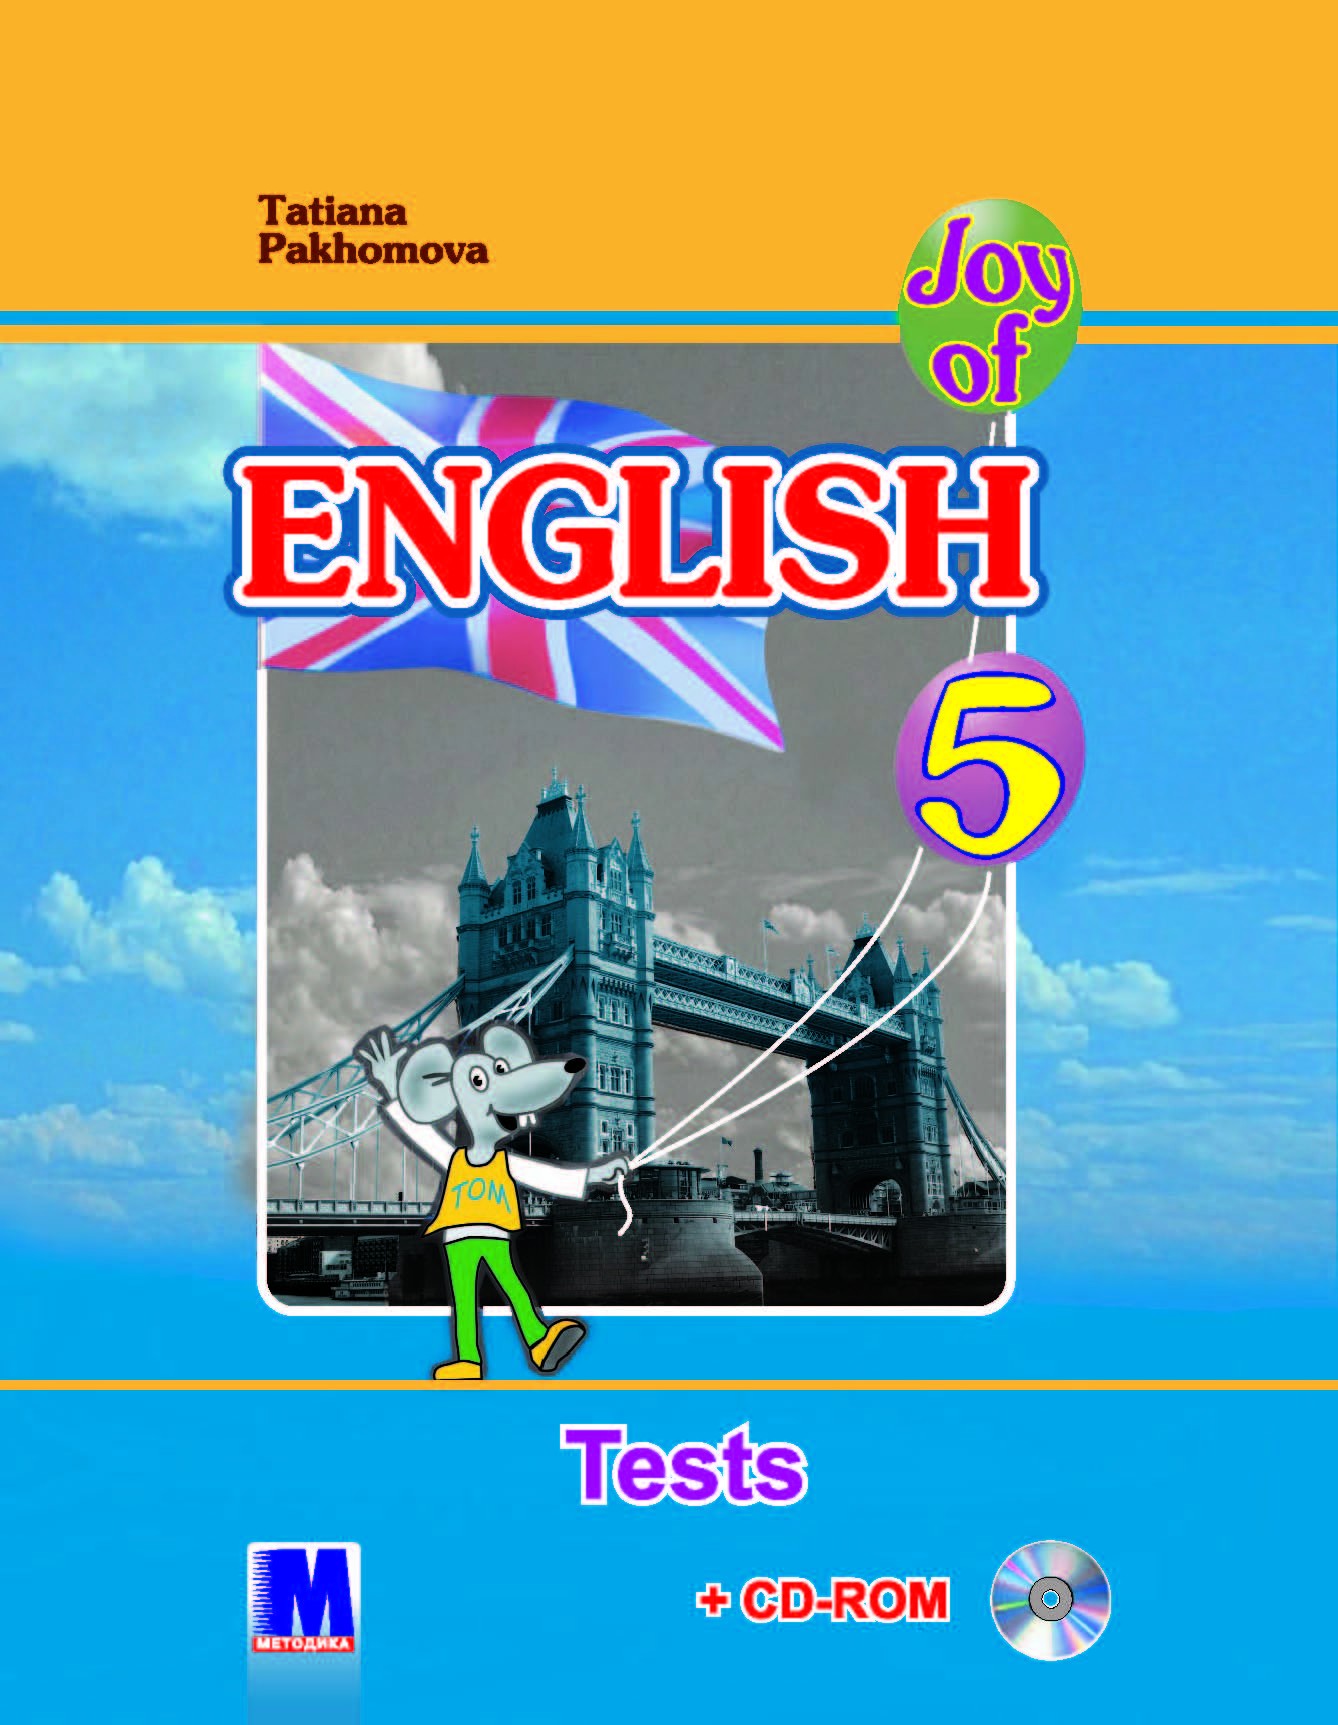 Т Пахомова Joy of English Тесты для 5 класса ОУЗ 1 й год обучения 2  иностранный язык CD ROM аудио видео 